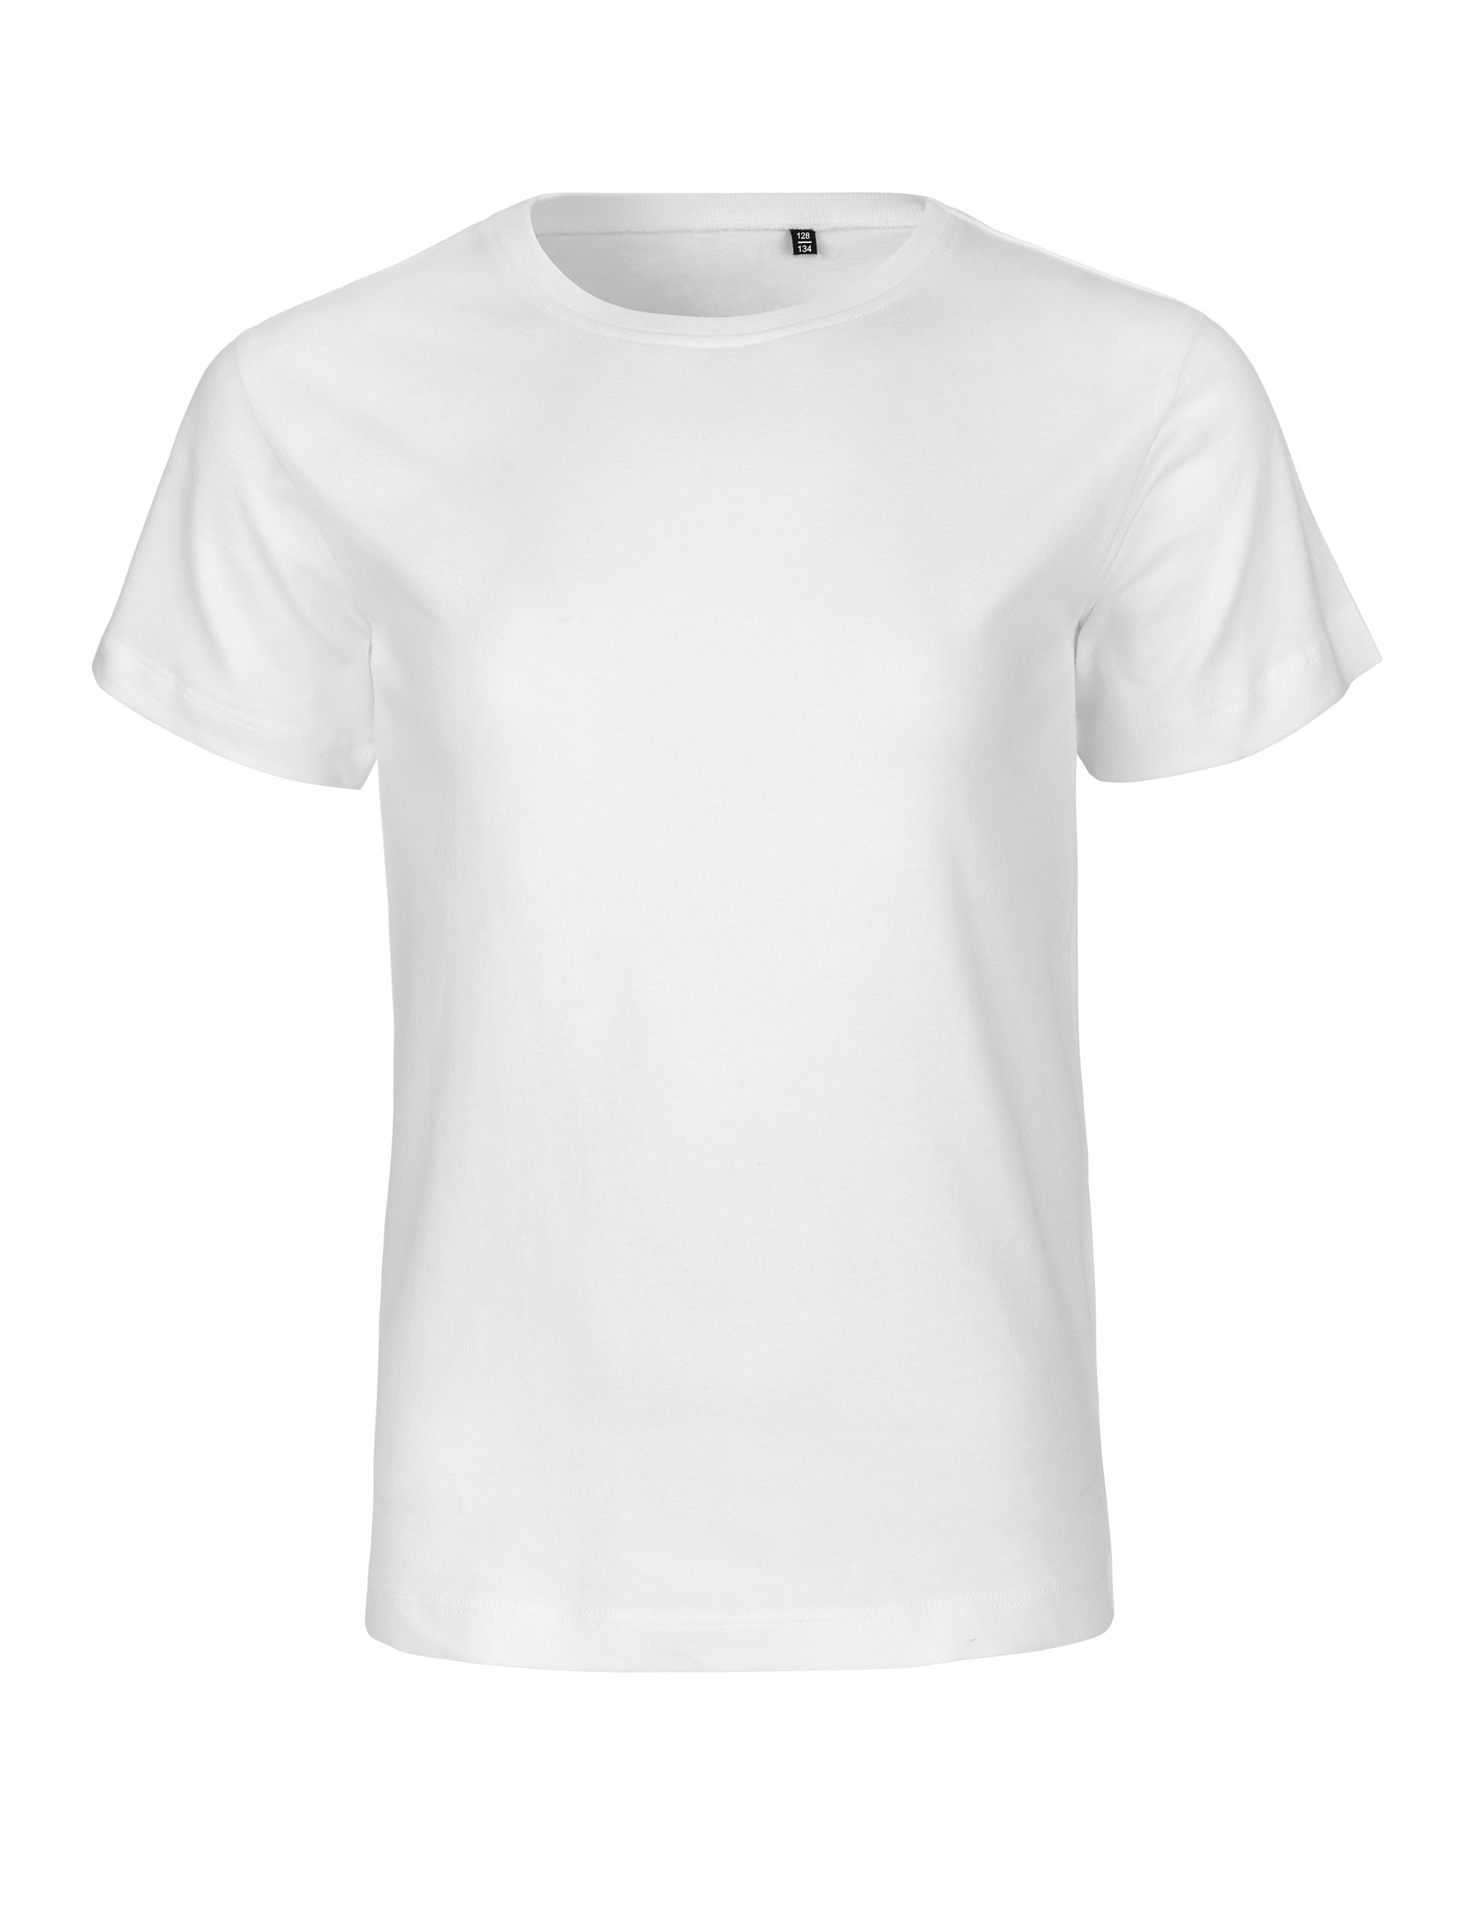 [PR/05962] Kids Tiger Cotton T-Shirt (White 01, 128/134 cm)